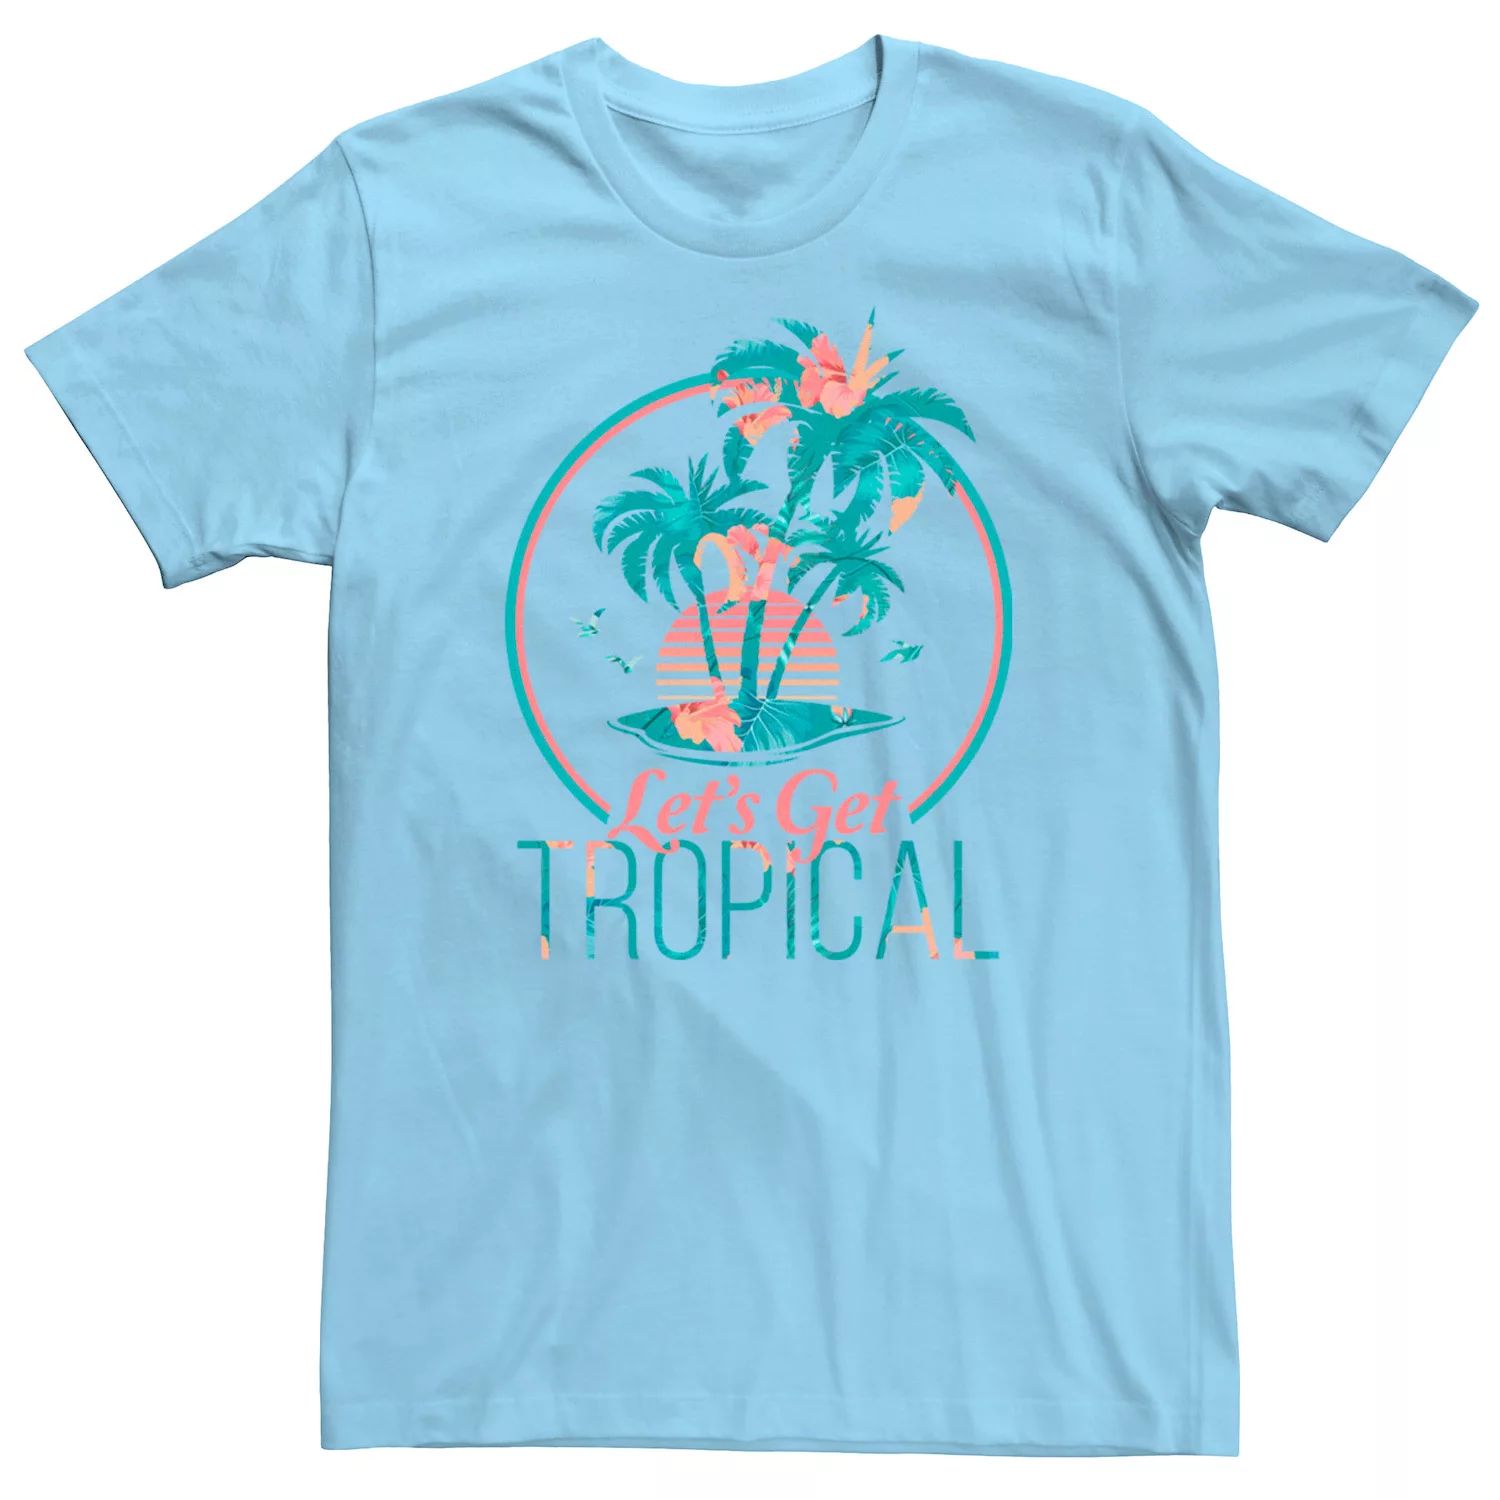 Мужская футболка Lets Get Tropical Island с цветочным наполнением Licensed Character, светло-синий